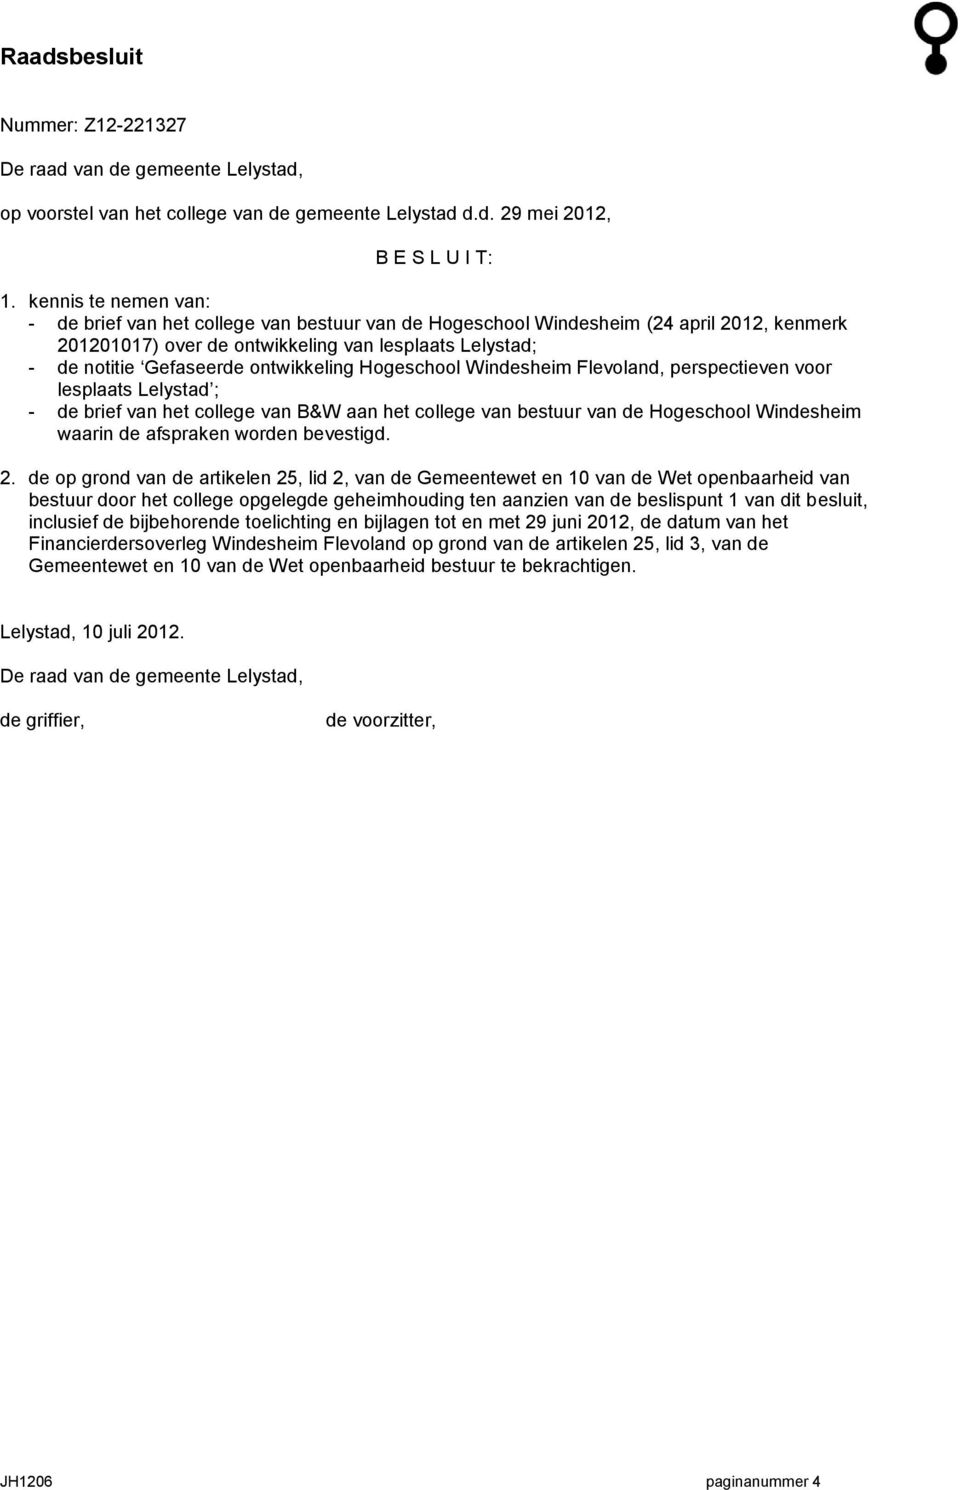 ontwikkeling Hogeschool Windesheim Flevoland, perspectieven voor lesplaats Lelystad ; - de brief van het college van B&W aan het college van bestuur van de Hogeschool Windesheim waarin de afspraken